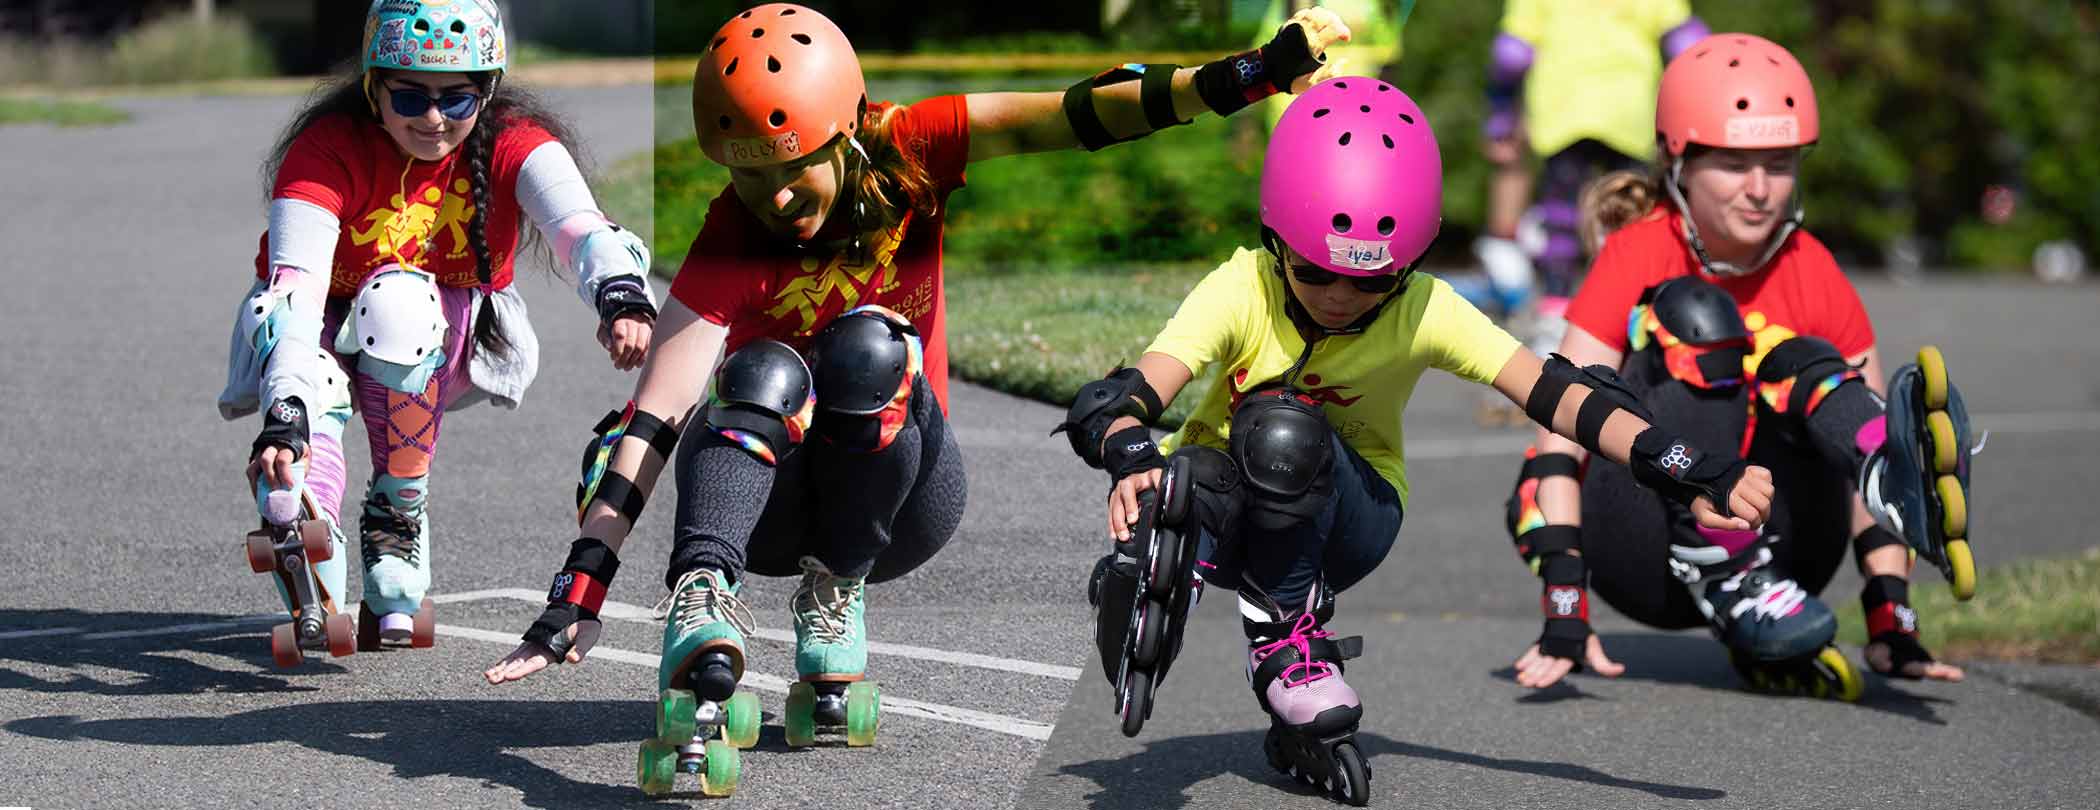 Inline and Roller Skate Tricks at Summer Skate Camp - Skate Journeys